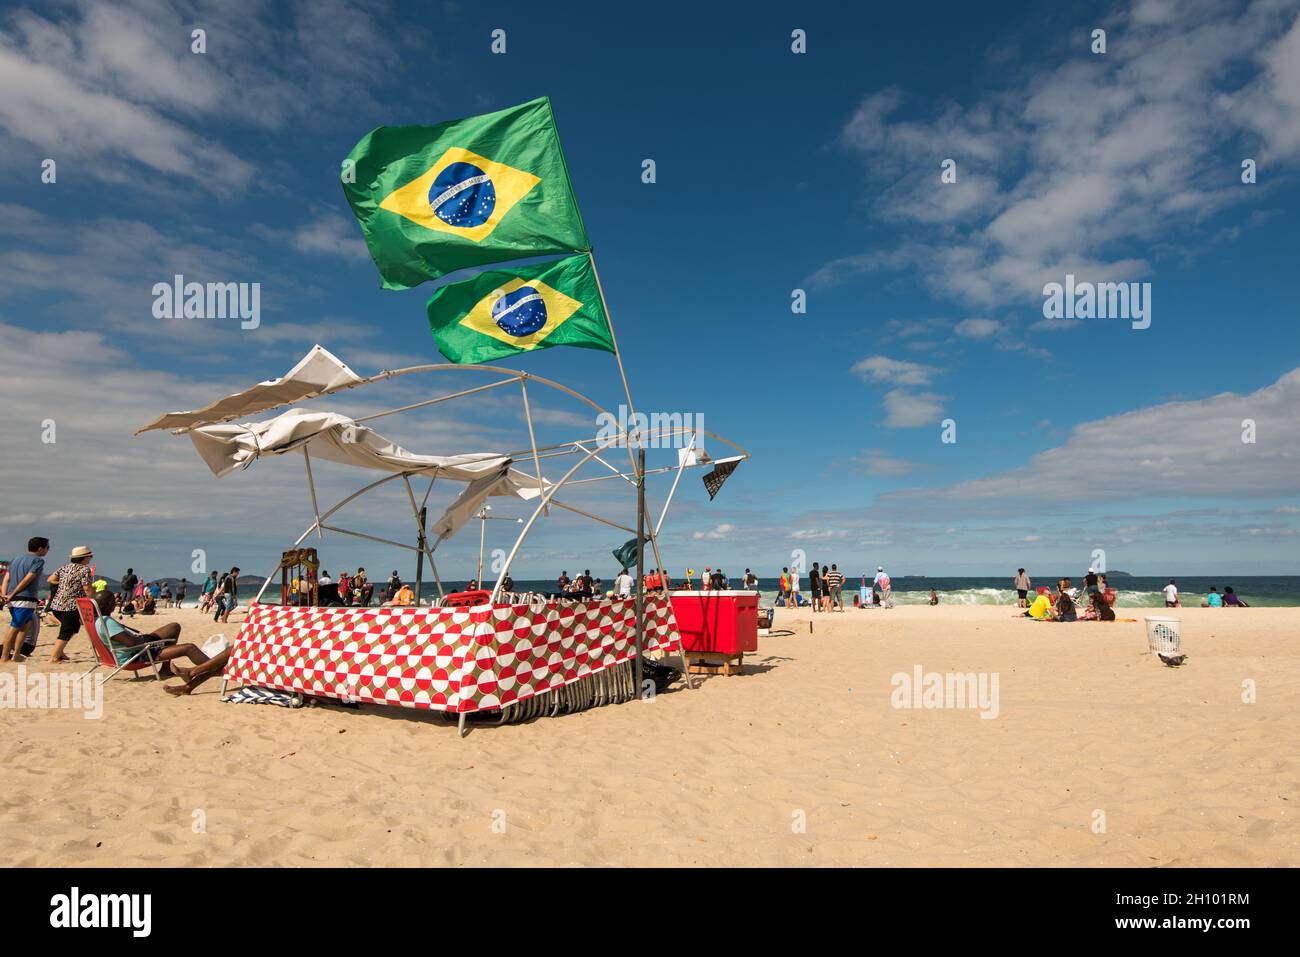 Rio de Janeiro, Brésil - 18 juillet 2016 : drapeaux brésiliens dans le vent au-dessus de la tente, par une journée venteuse sur la plage de Copacabana. Banque D'Images